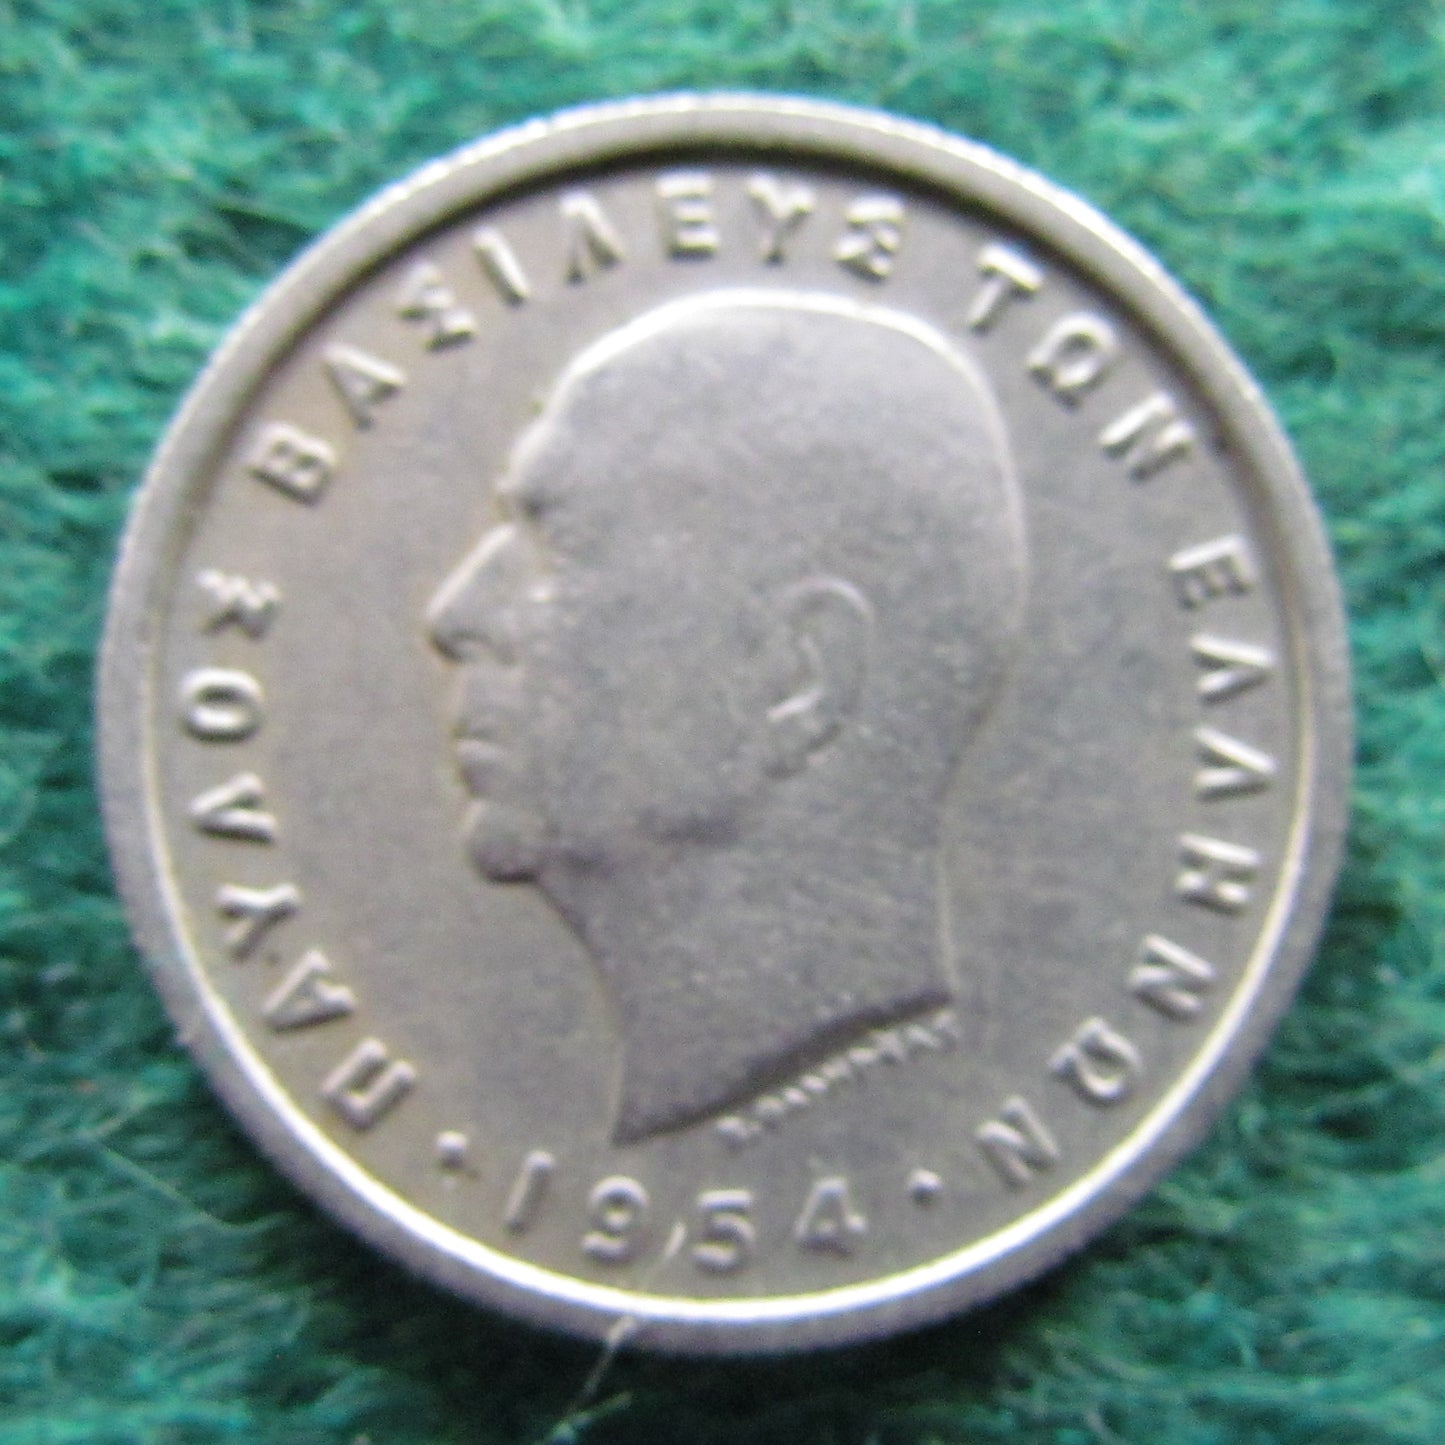 Greek 1954 1 Drachma Coin - Circulated